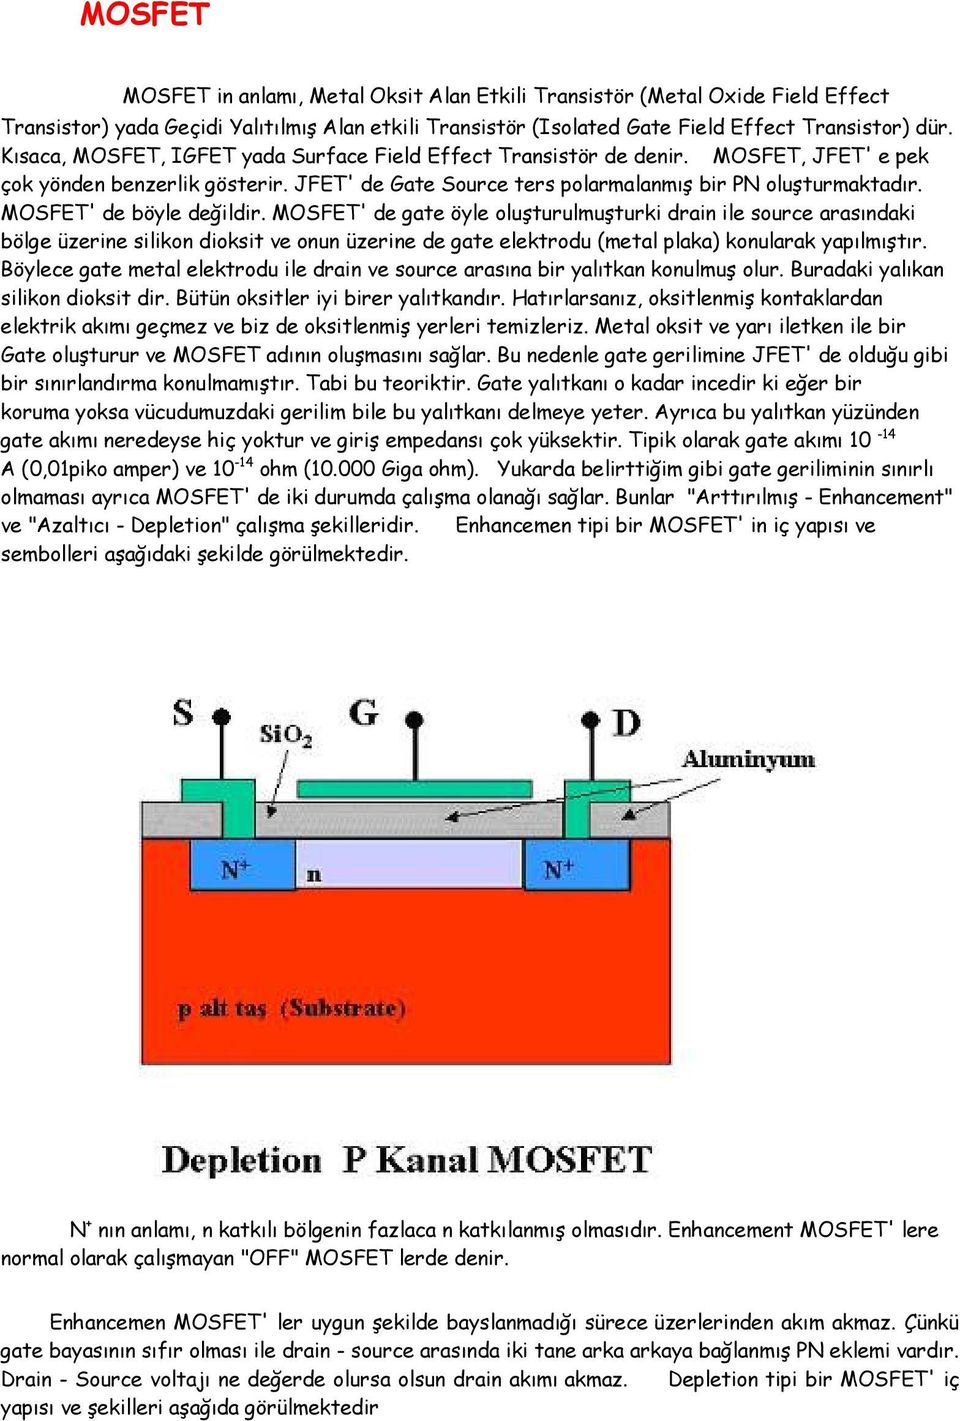 MOSFET' de böyle değildir. MOSFET' de gate öyle oluşturulmuşturki drain ile source arasındaki bölge üzerine silikon dioksit ve onun üzerine de gate elektrodu (metal plaka) konularak yapılmıştır.